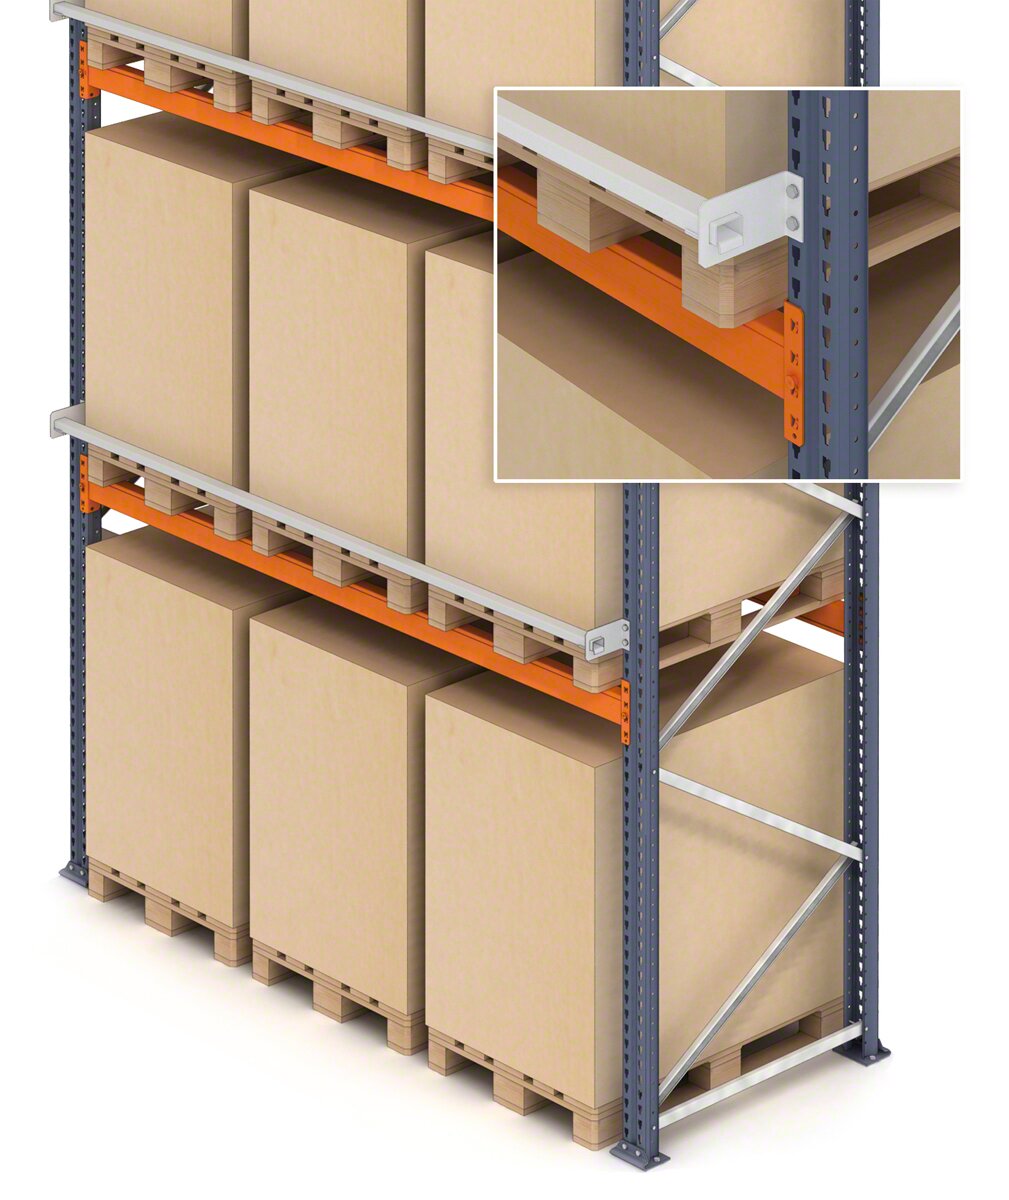 Es posible añadir un perfil de seguridad para la mercancía depositada en las estanterías de estibas